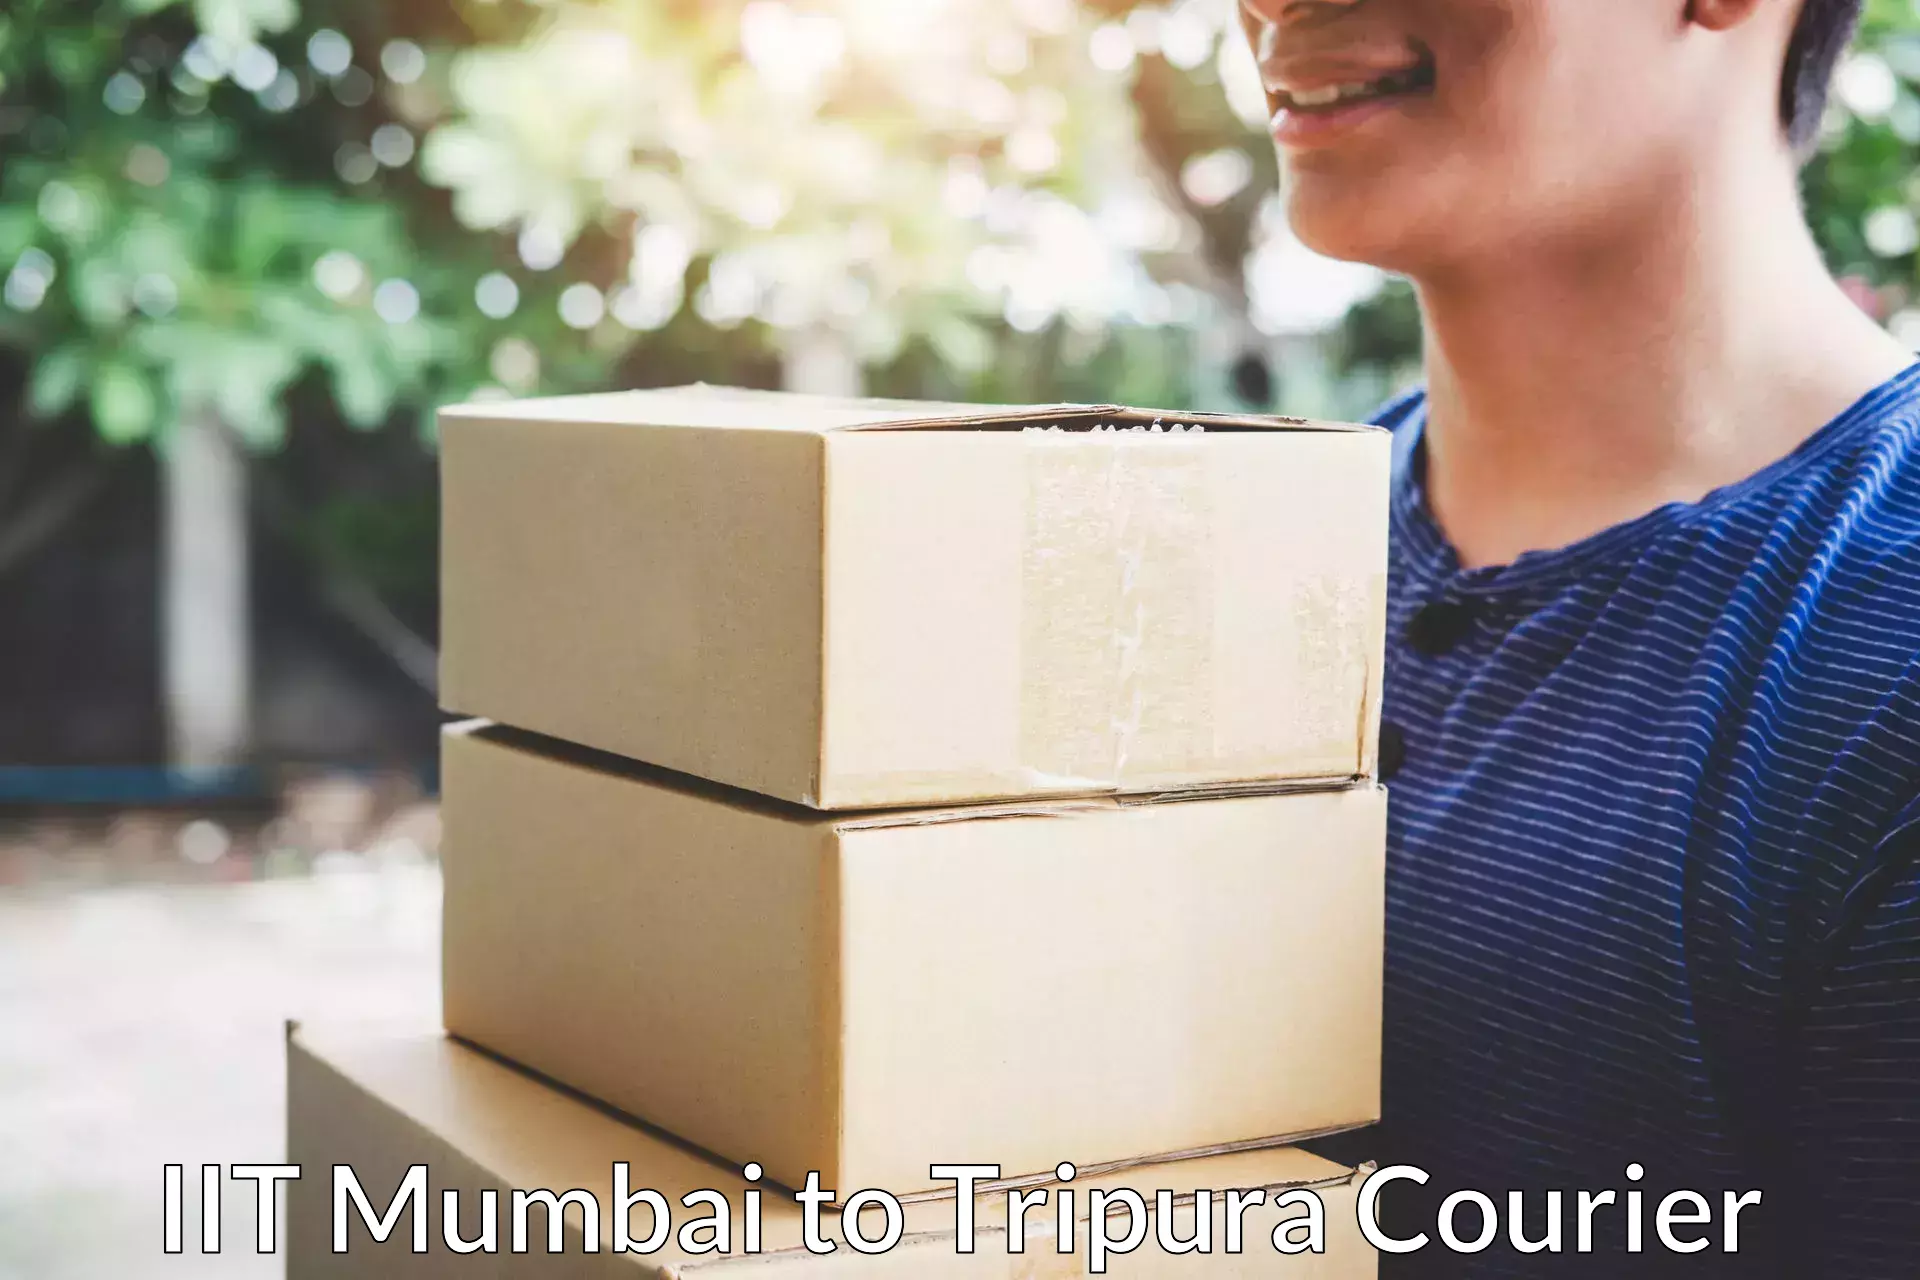 Furniture transport solutions IIT Mumbai to IIIT Agartala